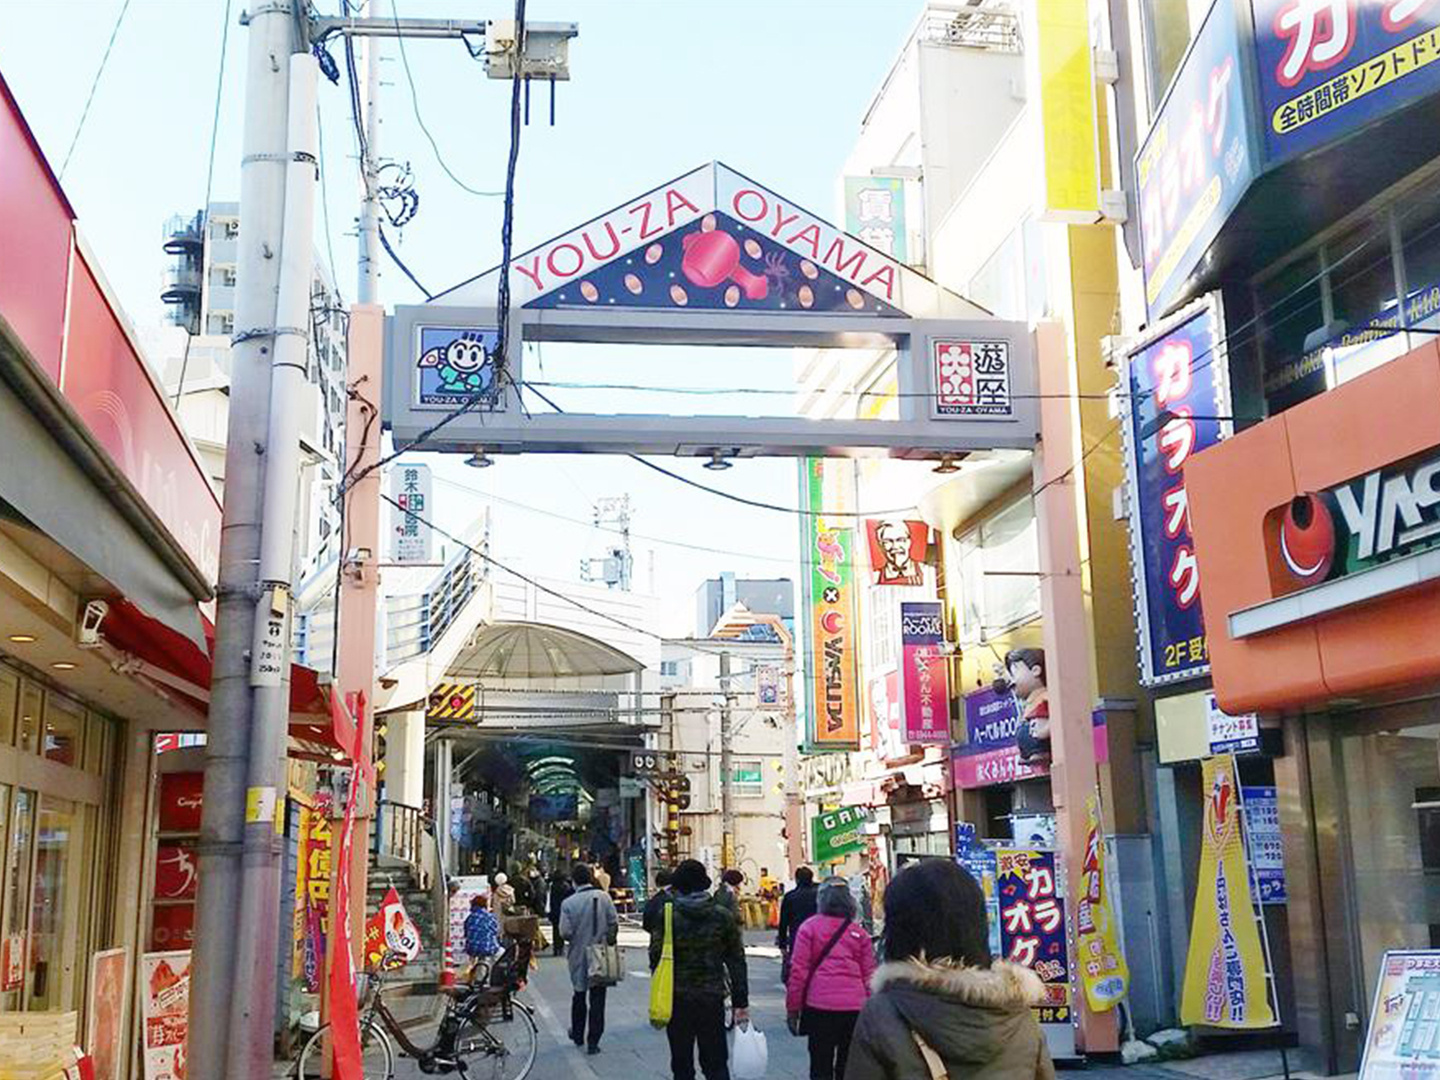 ハッピーロードし接続し大山駅の反対側まで続く商店街は「遊座大山商店街」